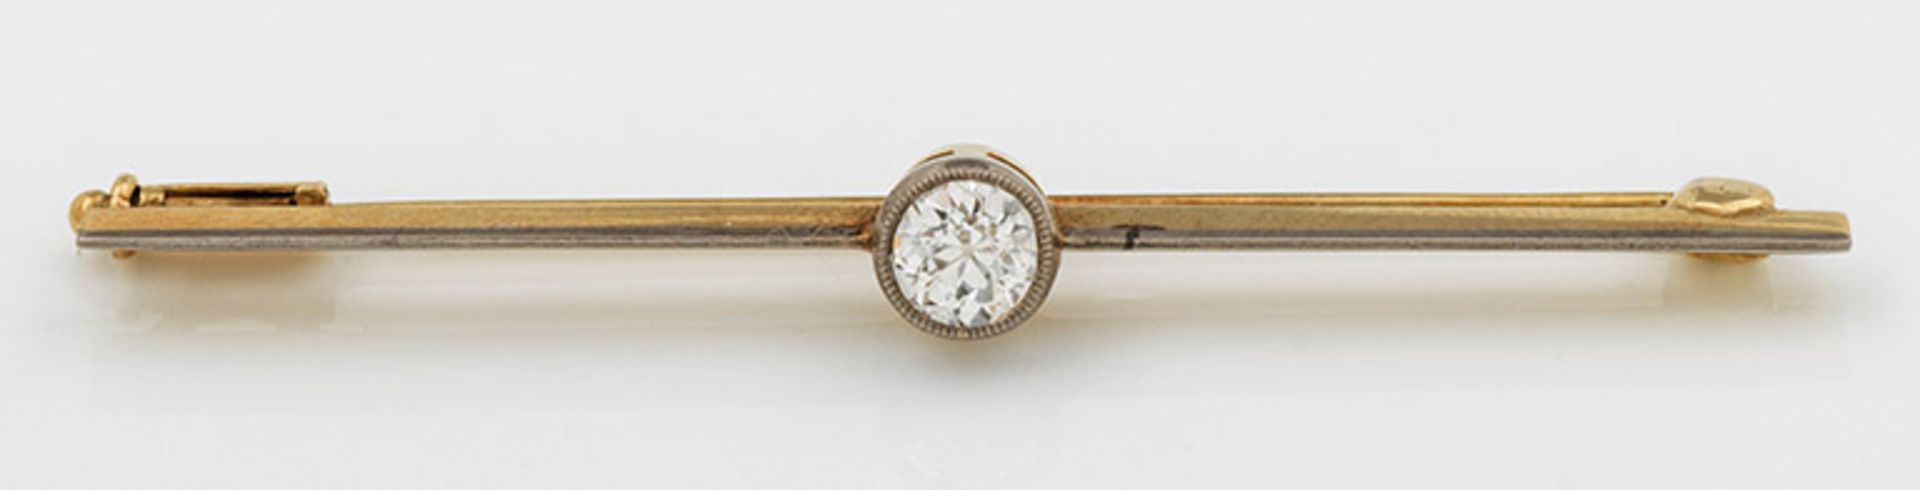 Klassische Diamant-SolitärnadelGelbgold, gest. 585. Zentral besetzt mit einem Altschliffdiamanten